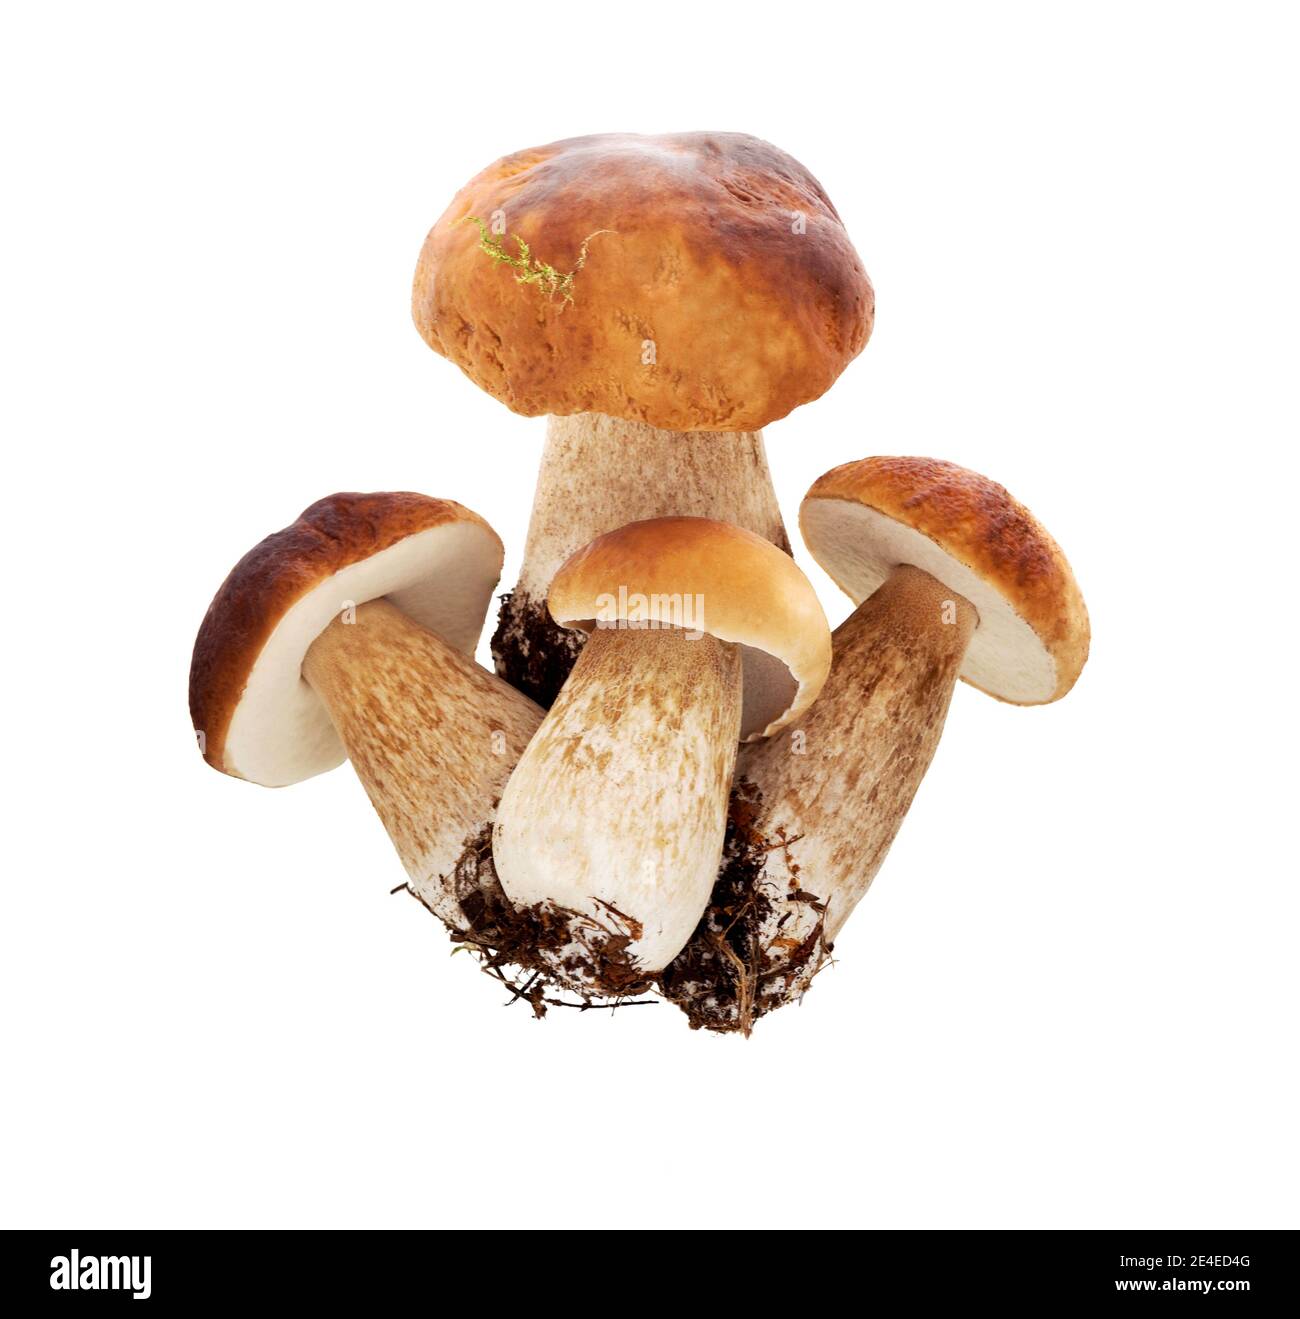 Funghi di bosco - Boletus edulis, isolato su sfondo bianco. Ceps o funghi porcini. Foto Stock